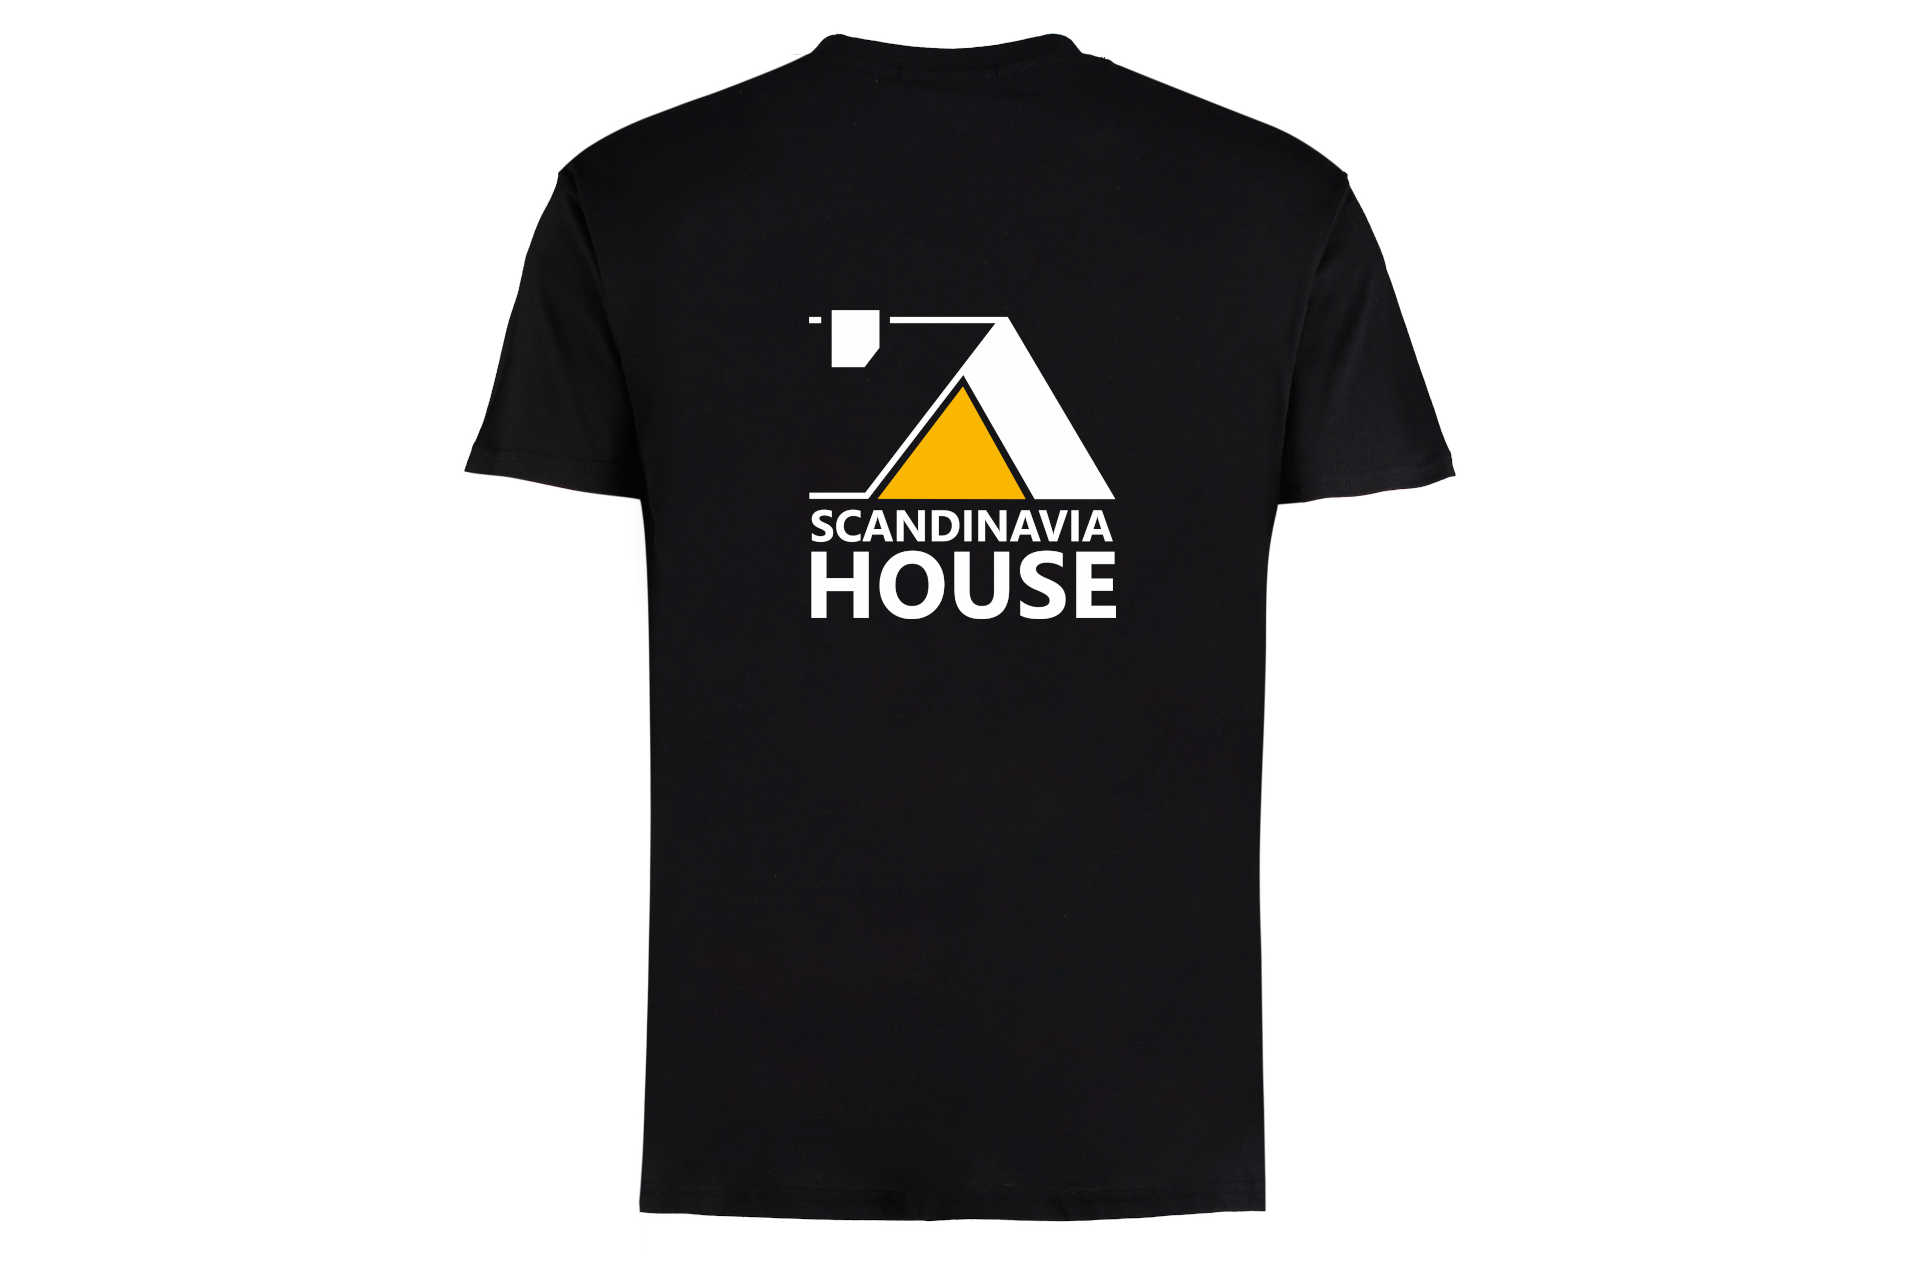 Одежда с логотипом Скандинавия Хаус Scandinavia House бренд купить